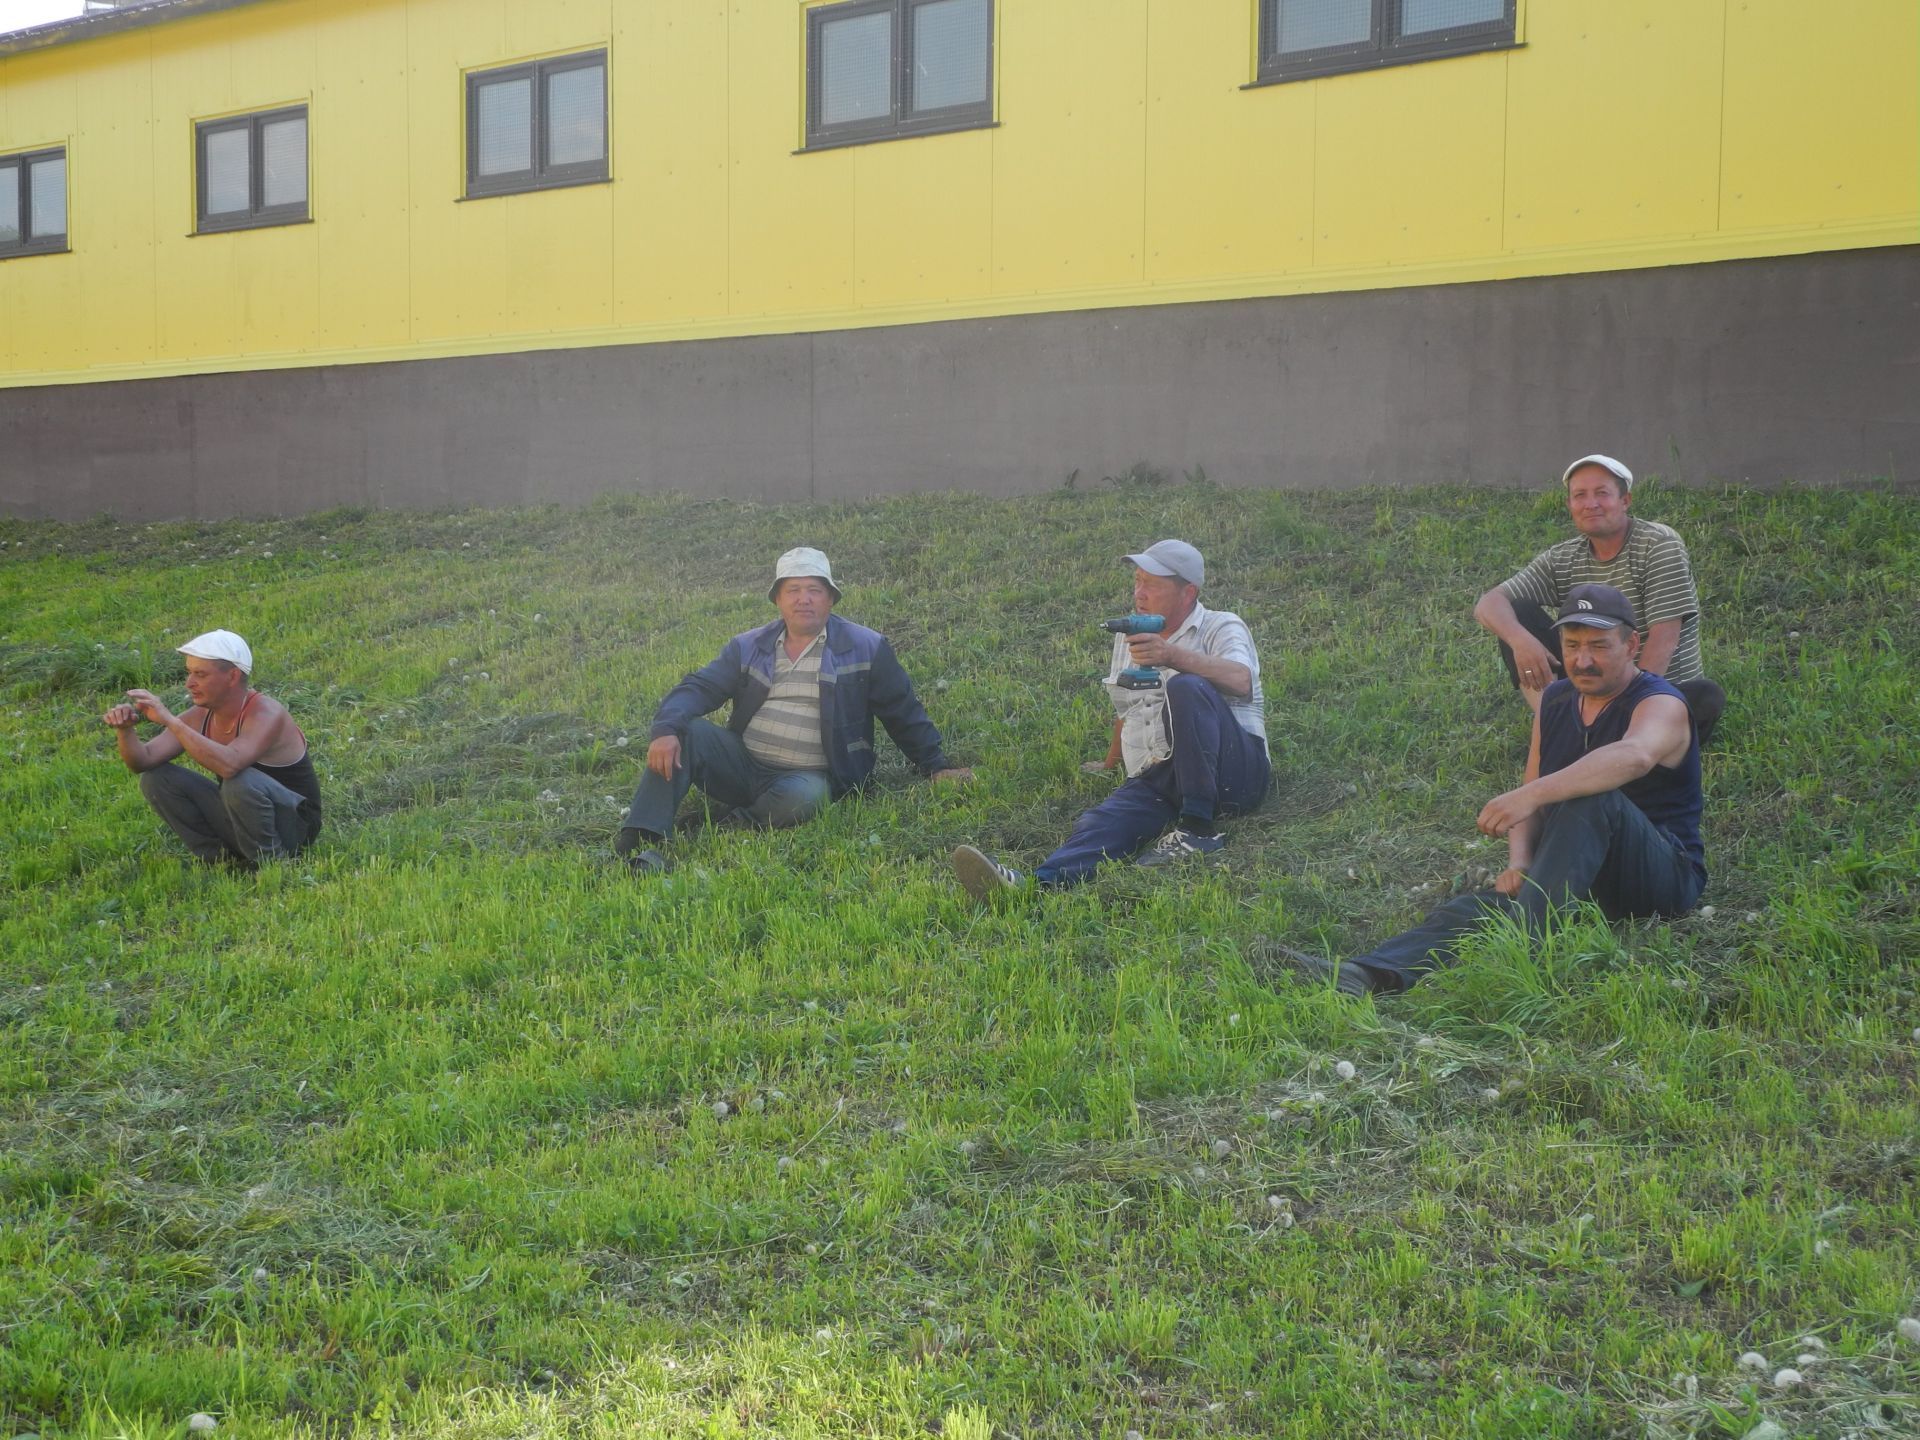 Работники животноводческого комплекса хозяйства "Кулон-Агро"  встречают Сабантуй с хорошими результатами труда